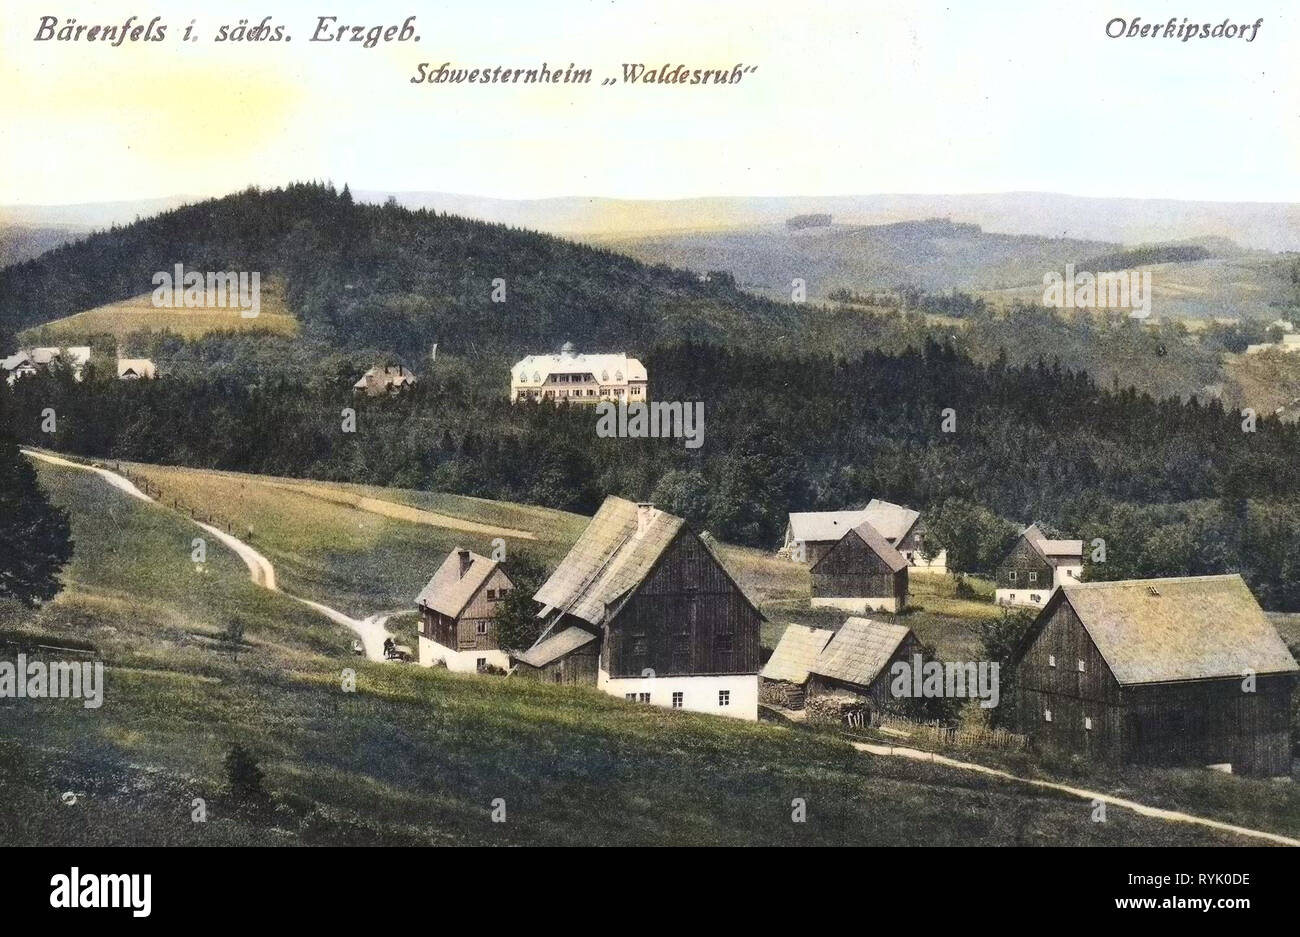 Buildings in Landkreis Sächsische Schweiz-Osterzgebirge, Bärenfels, 1913, Landkreis Sächsische Schweiz-Osterzgebirge, Schwesternheim Waldesruh, Oberkipsdorf, Germany Stock Photo